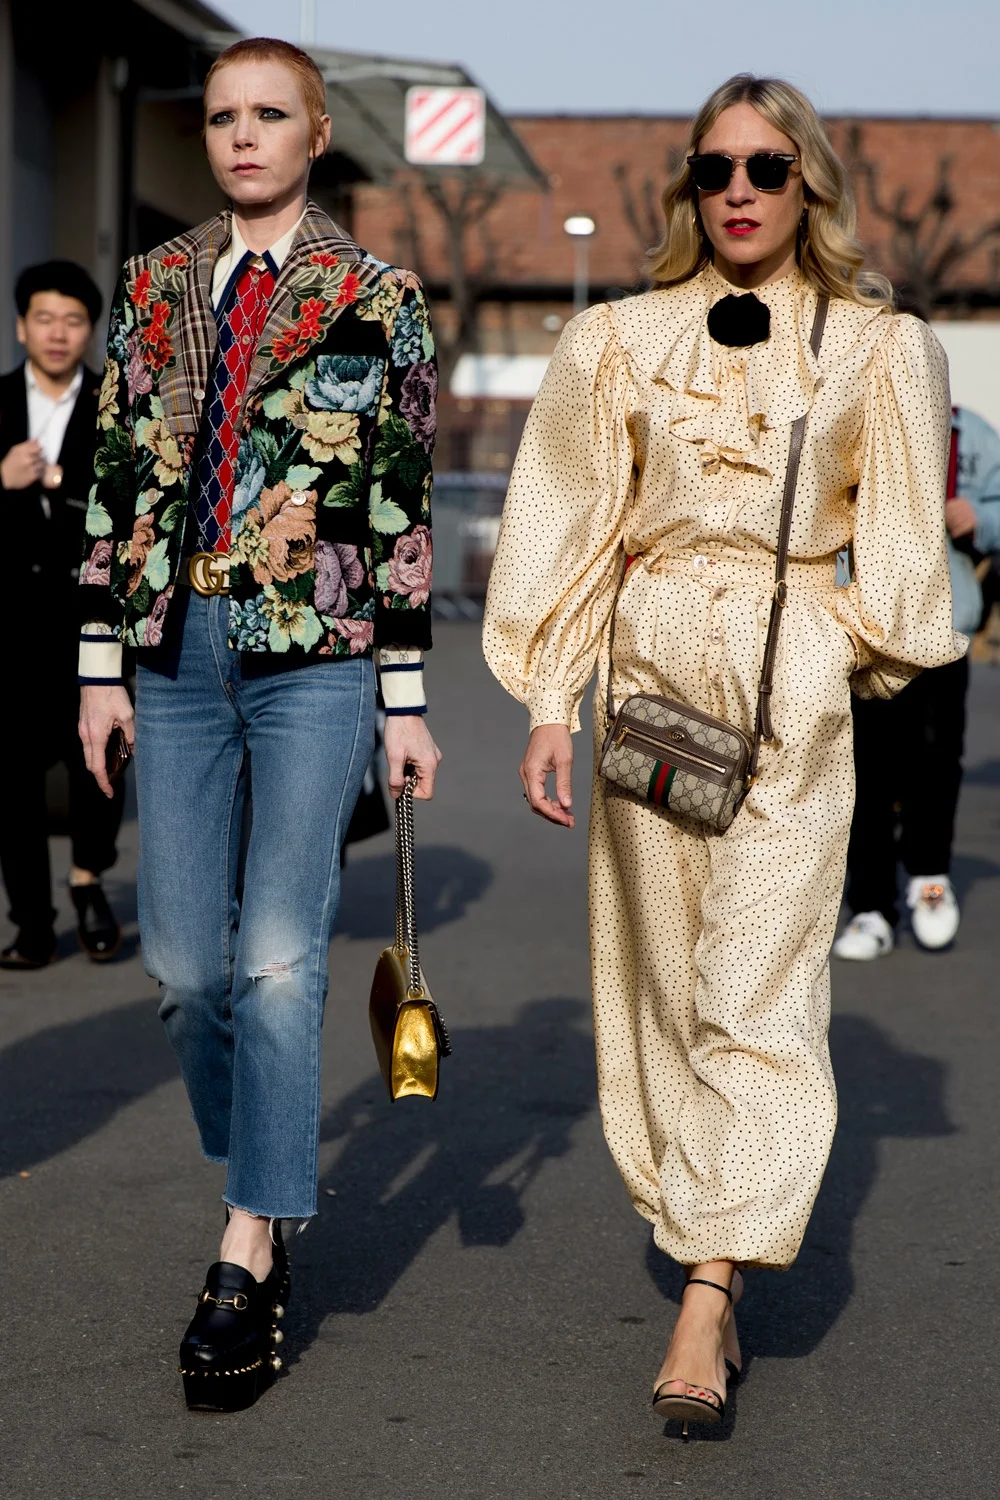 Милан в тренде: как одеваются звезды street style на модные показы - фото 371404